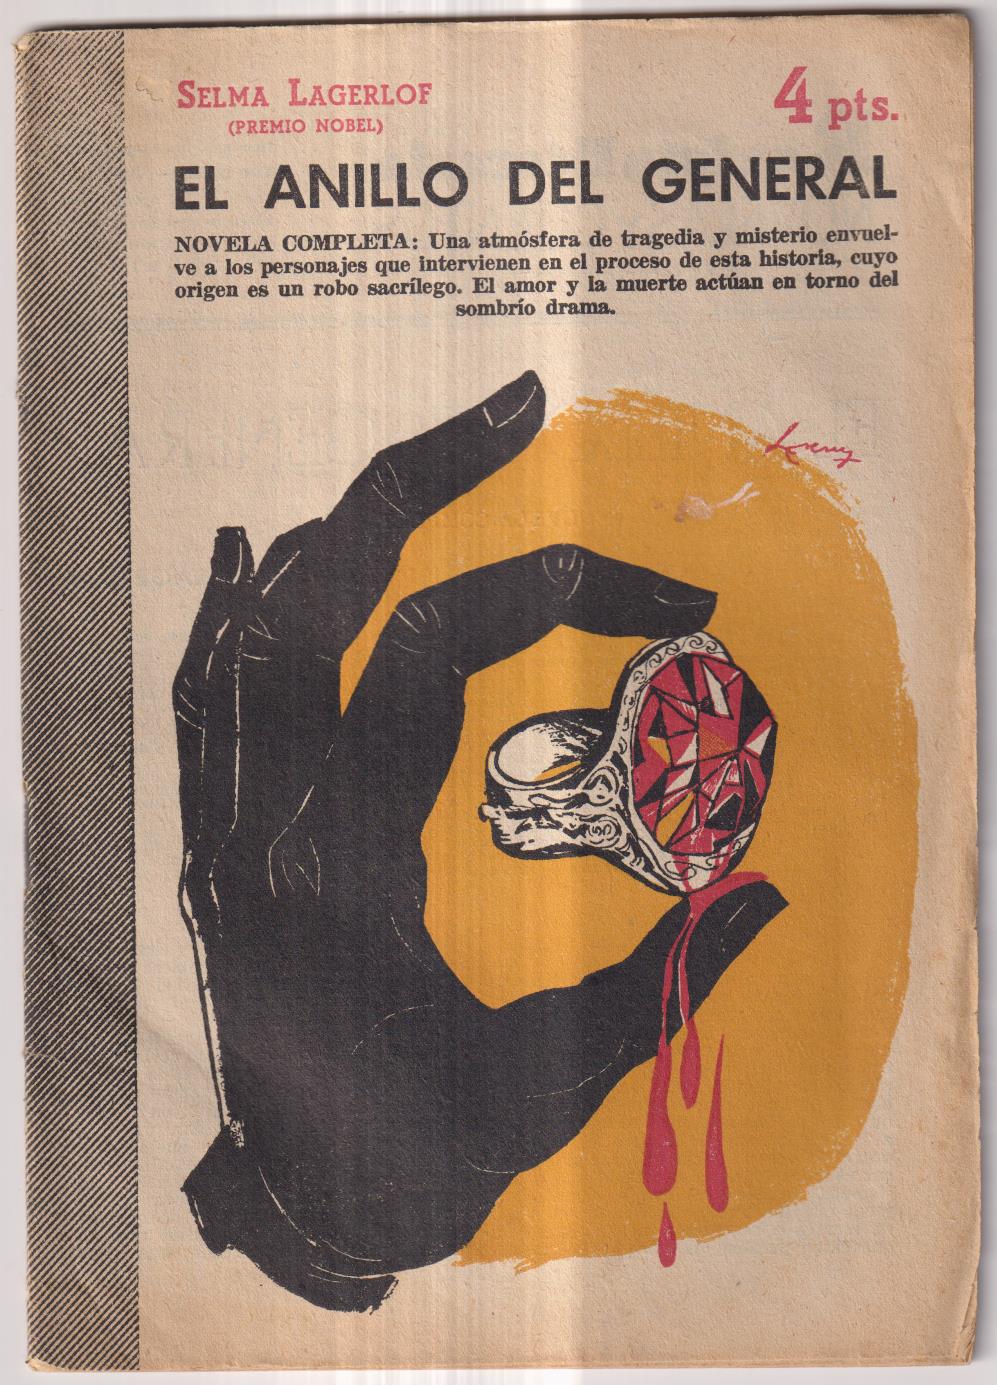 Revista GenerAL Novelas y Cuentos nº 1371. Selma Lagerlof. El anillo del General, año 1957